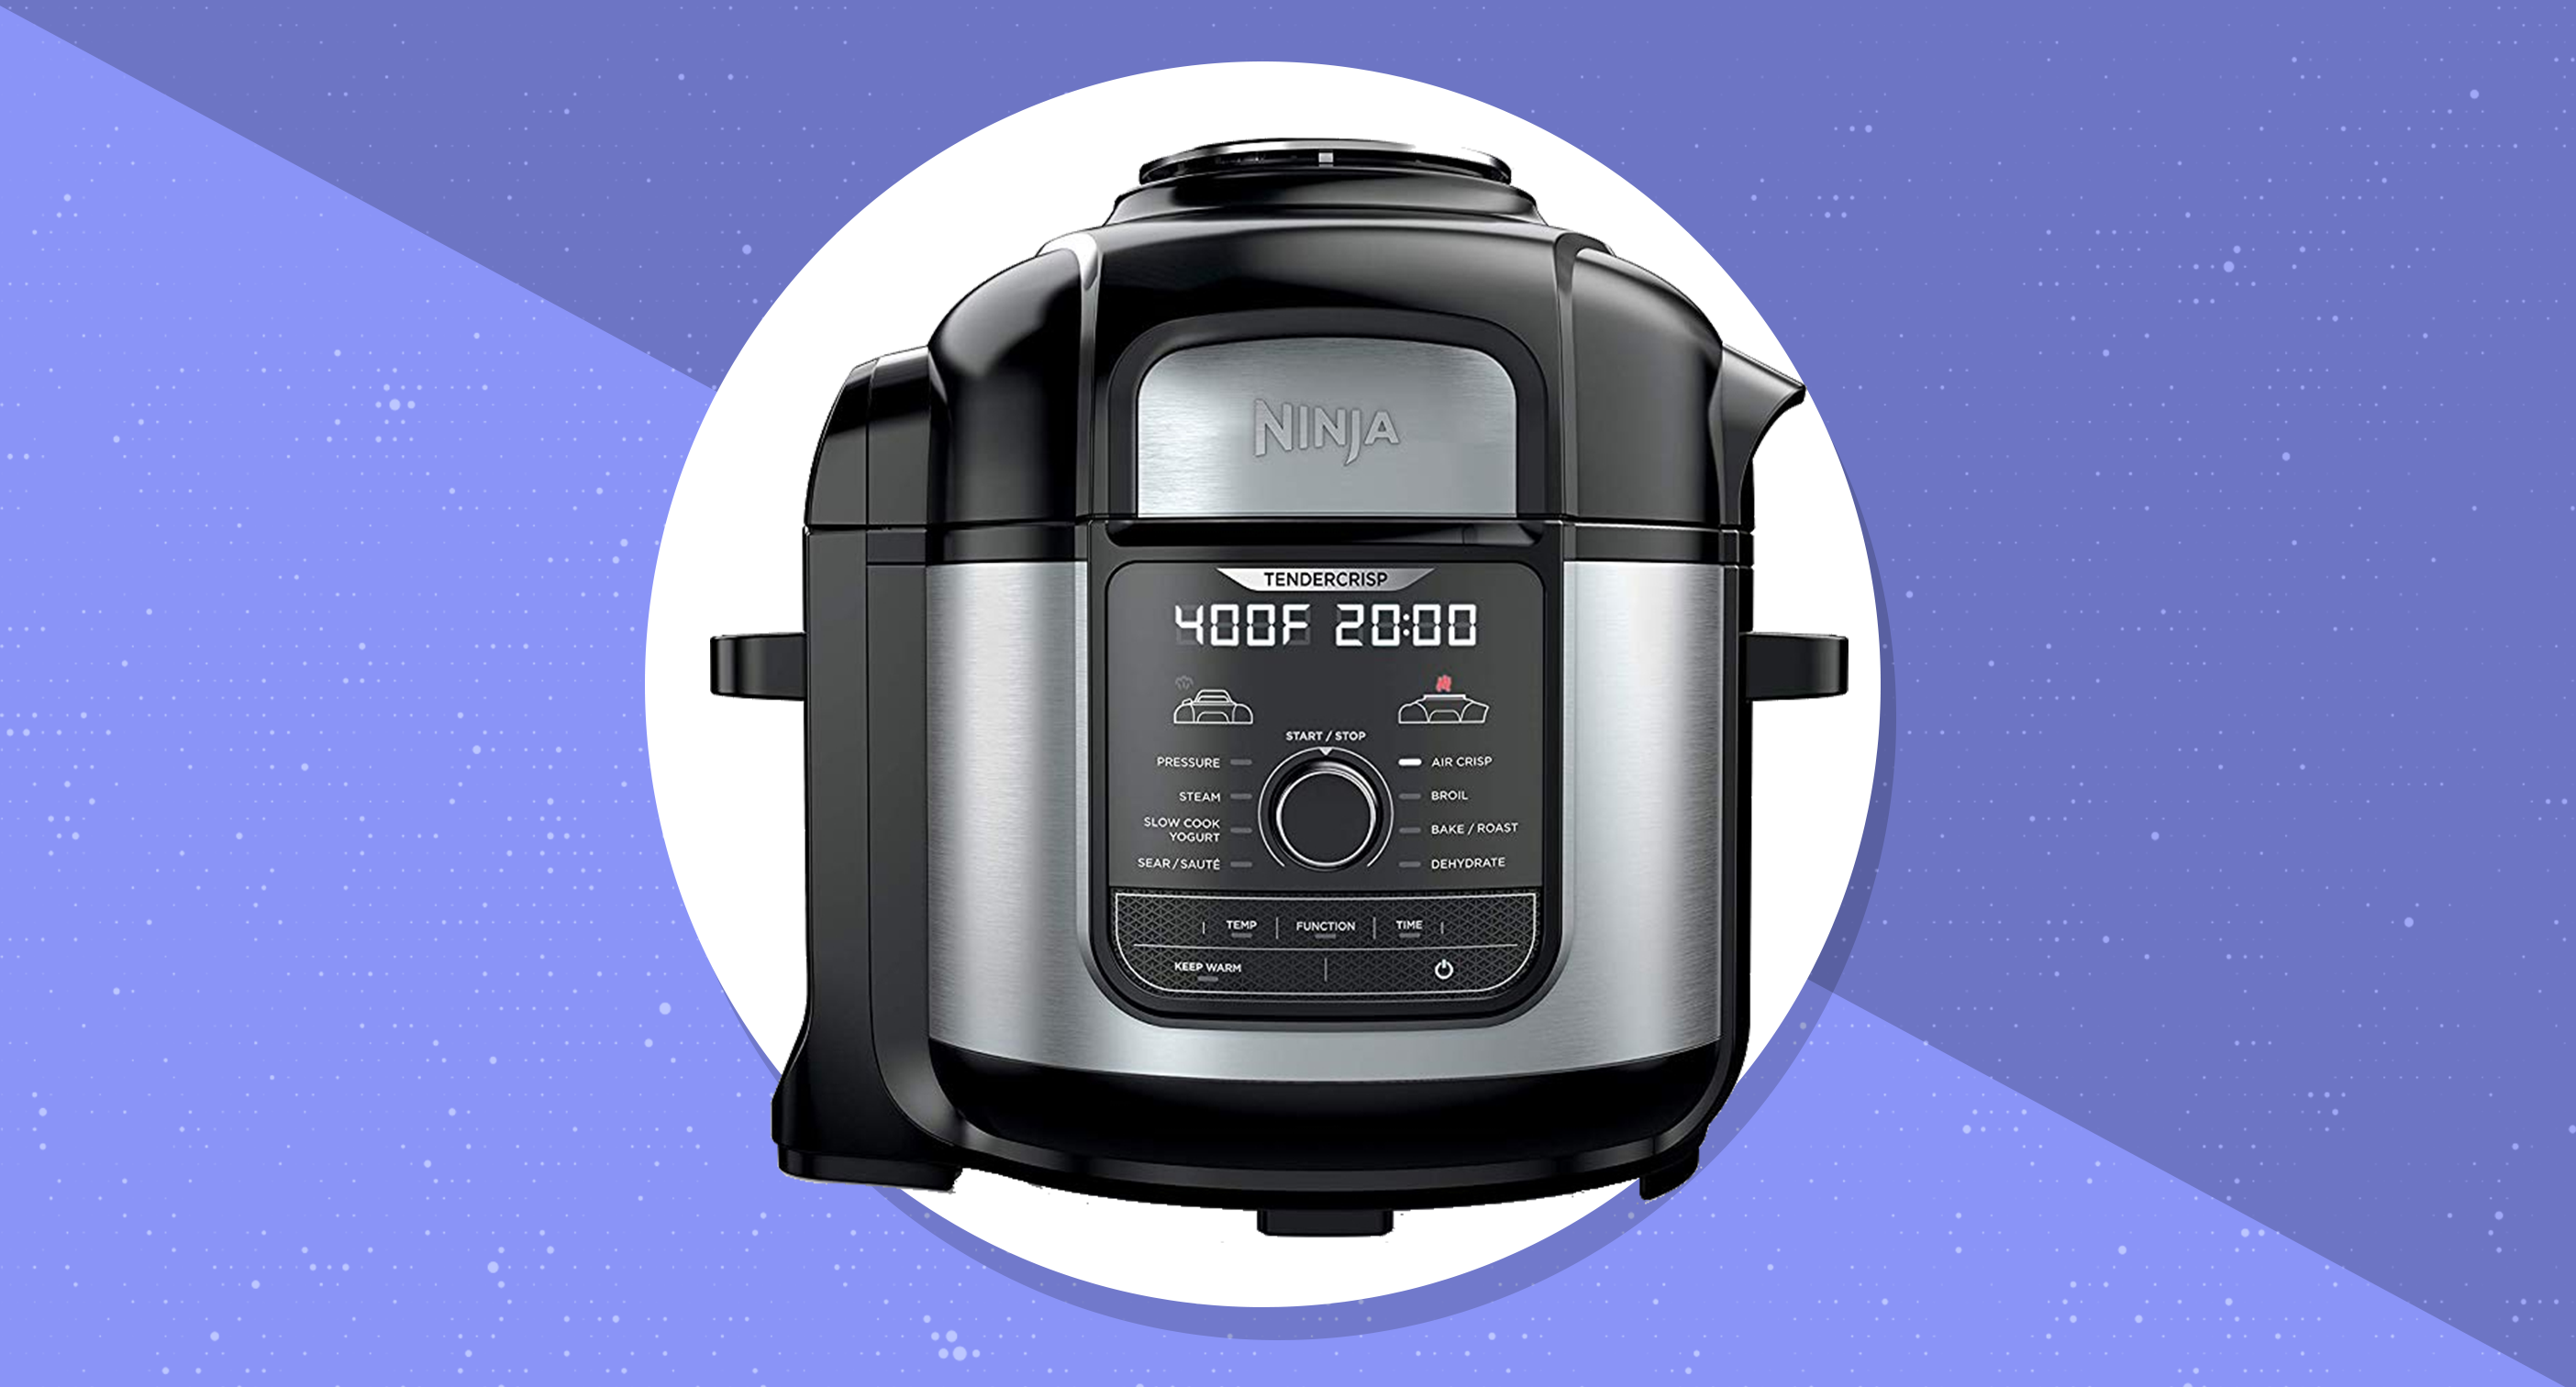 The Ninja Foodi multi-cooker is on sale at Amazon